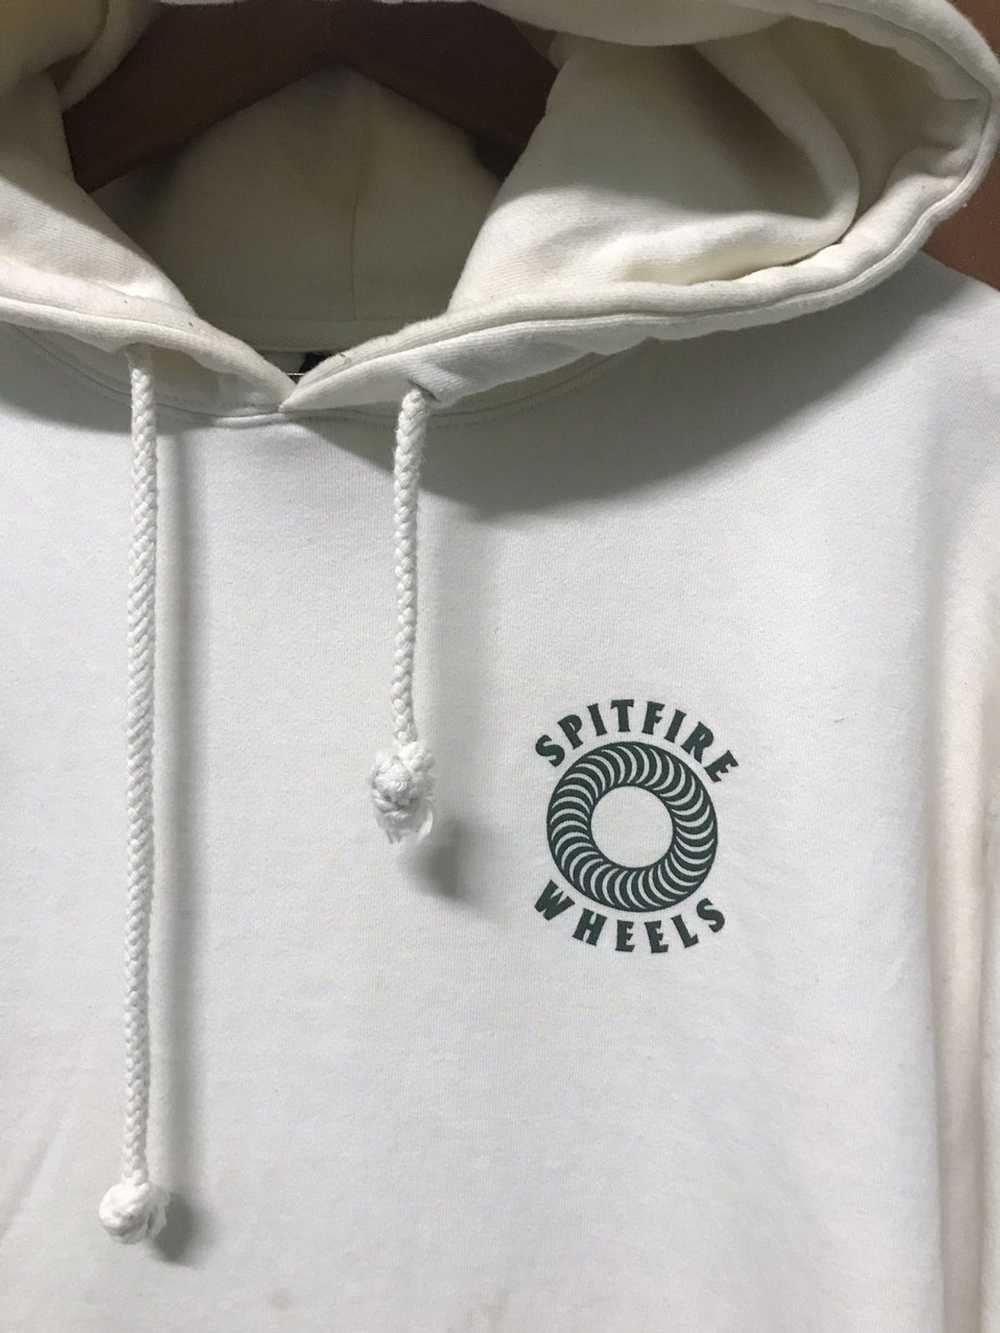 Japanese Brand Spitfire wheels sweatshirt hoodie - image 3